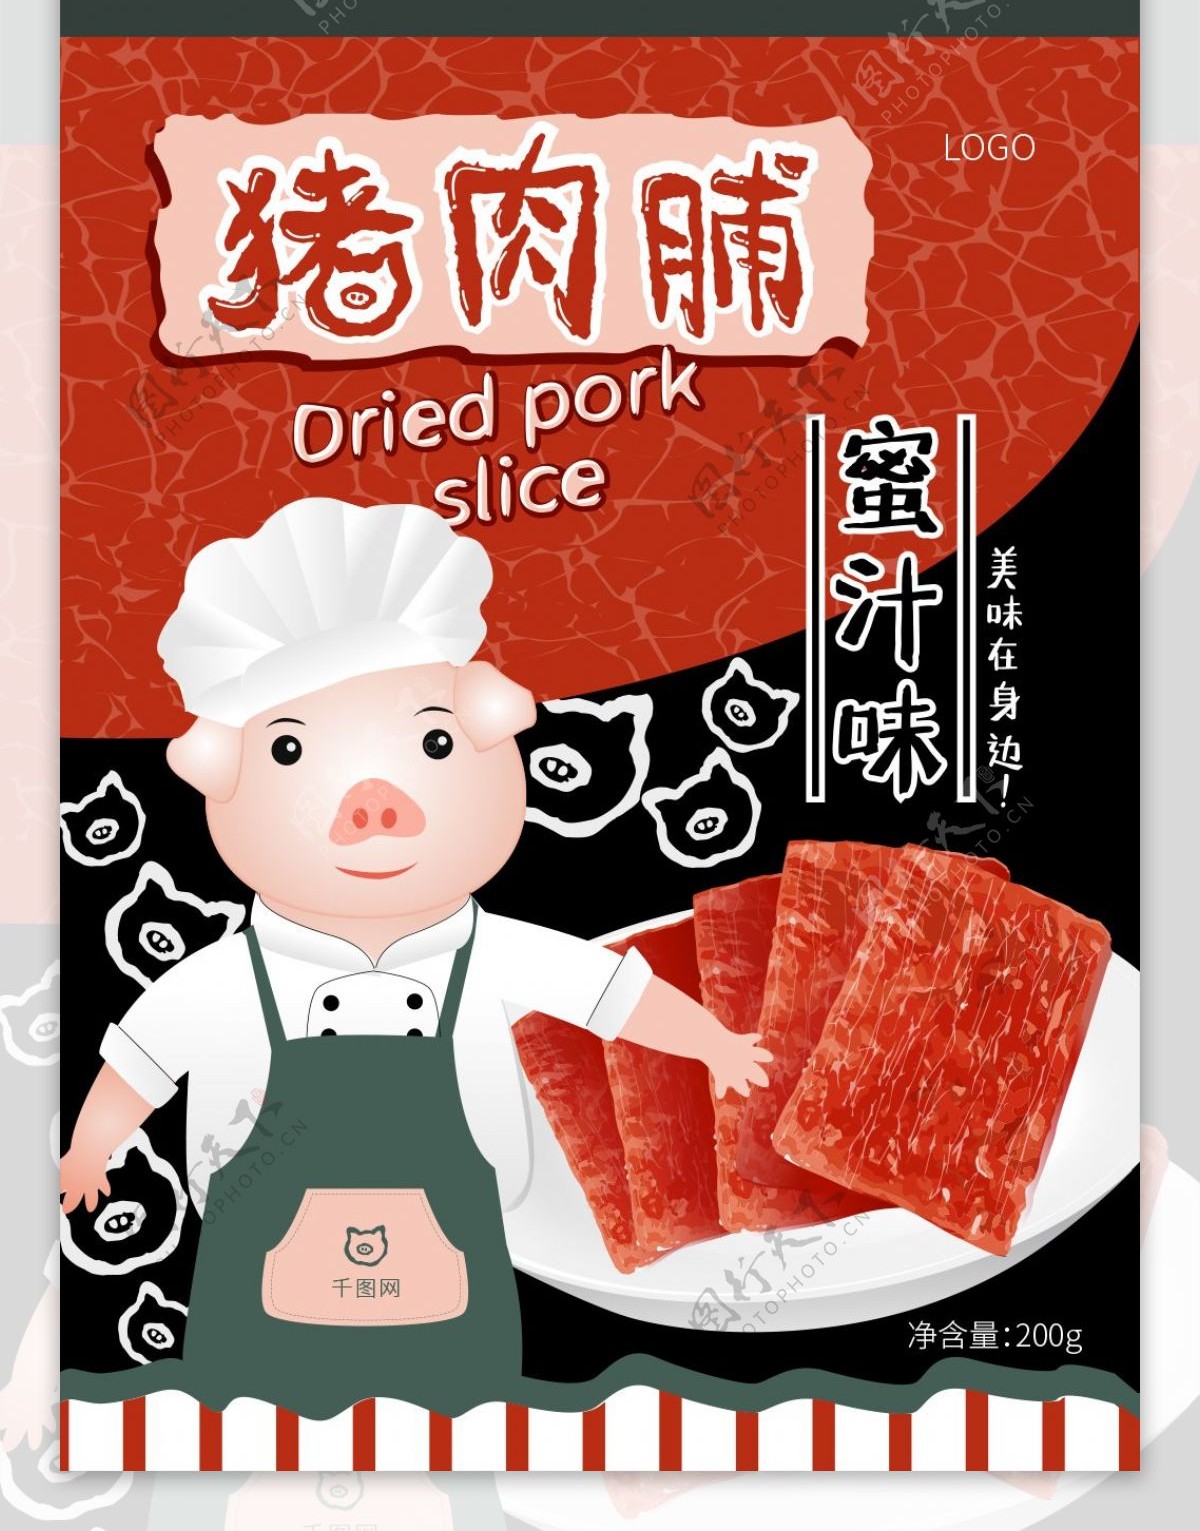 食品包装设计插画蜜汁猪肉脯零食肉类美味